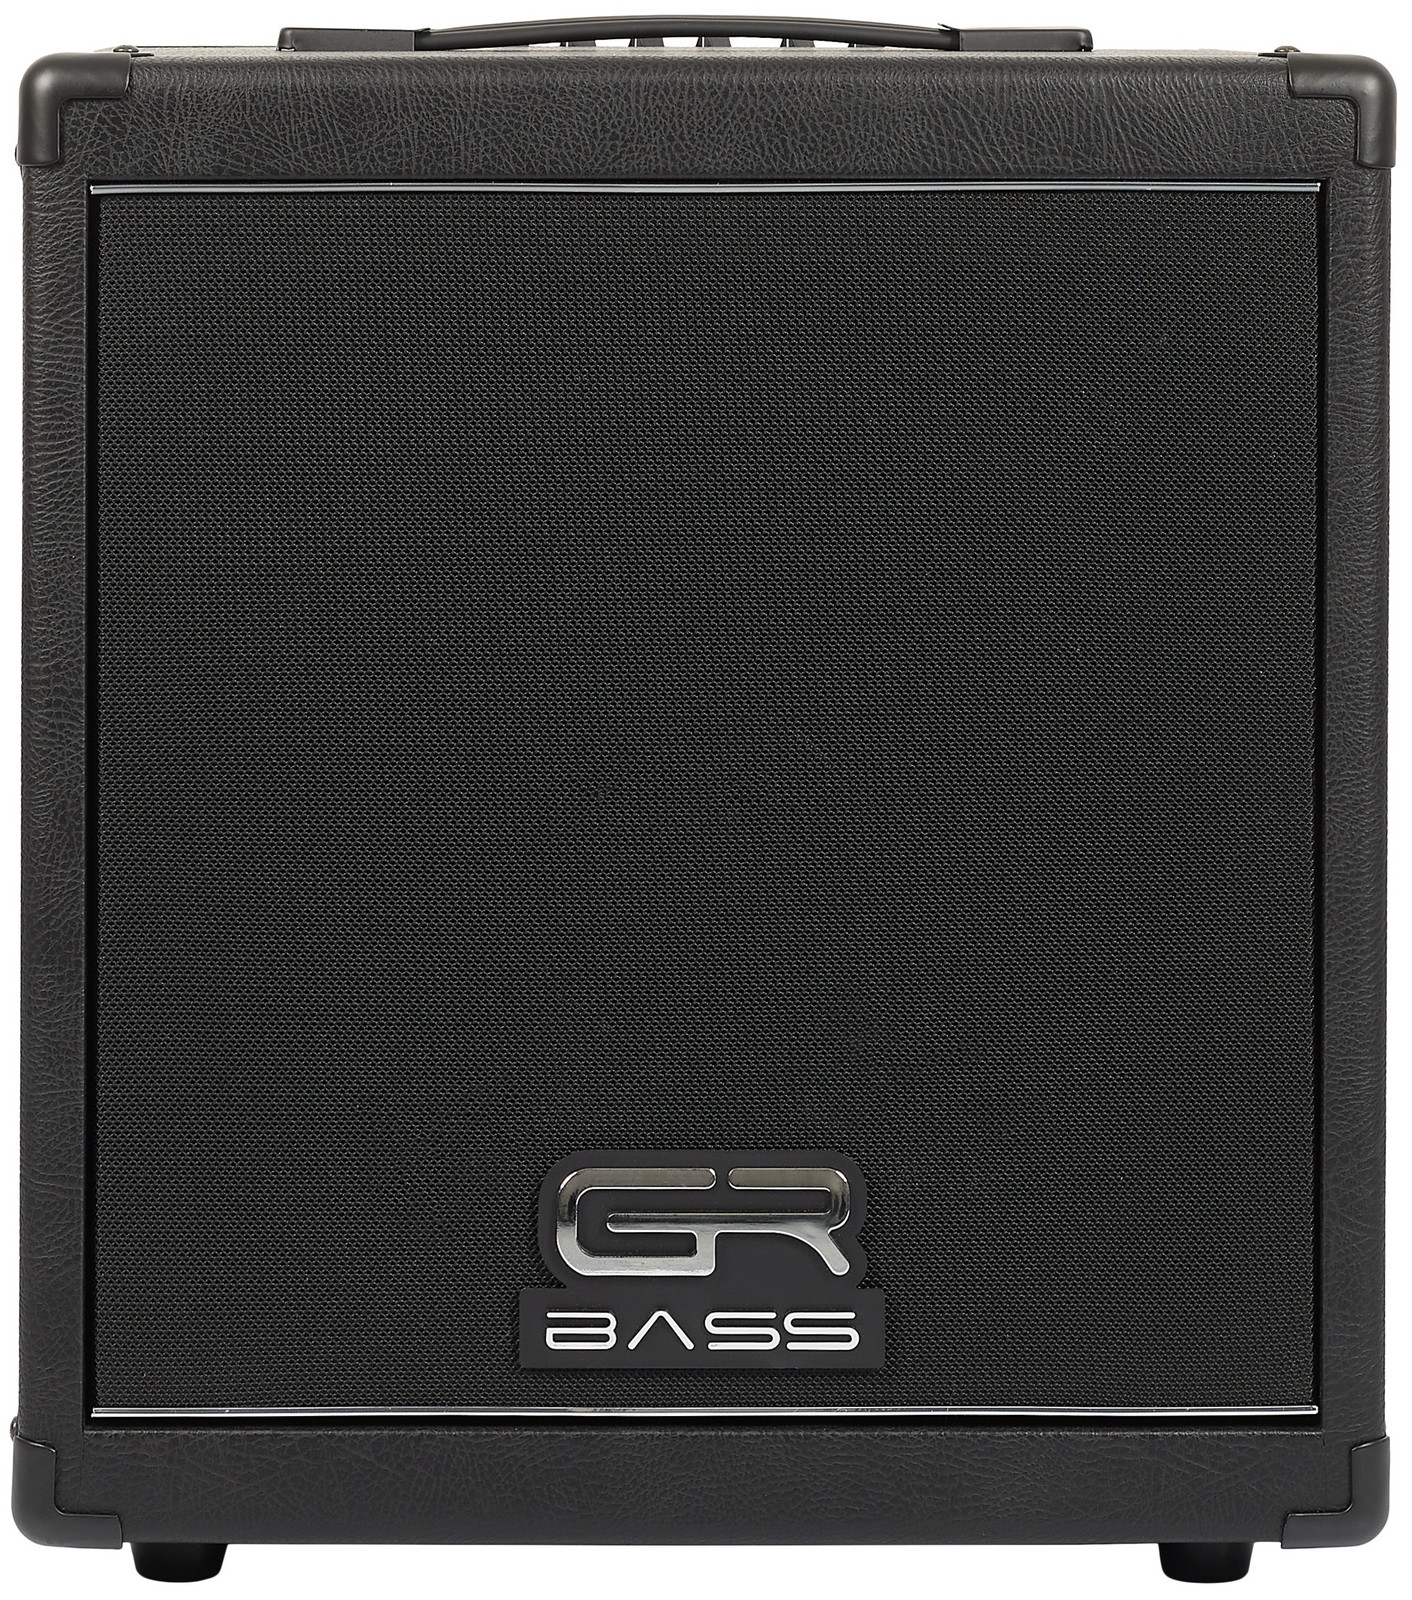 GR Bass CUBE 350 (rozbalené)